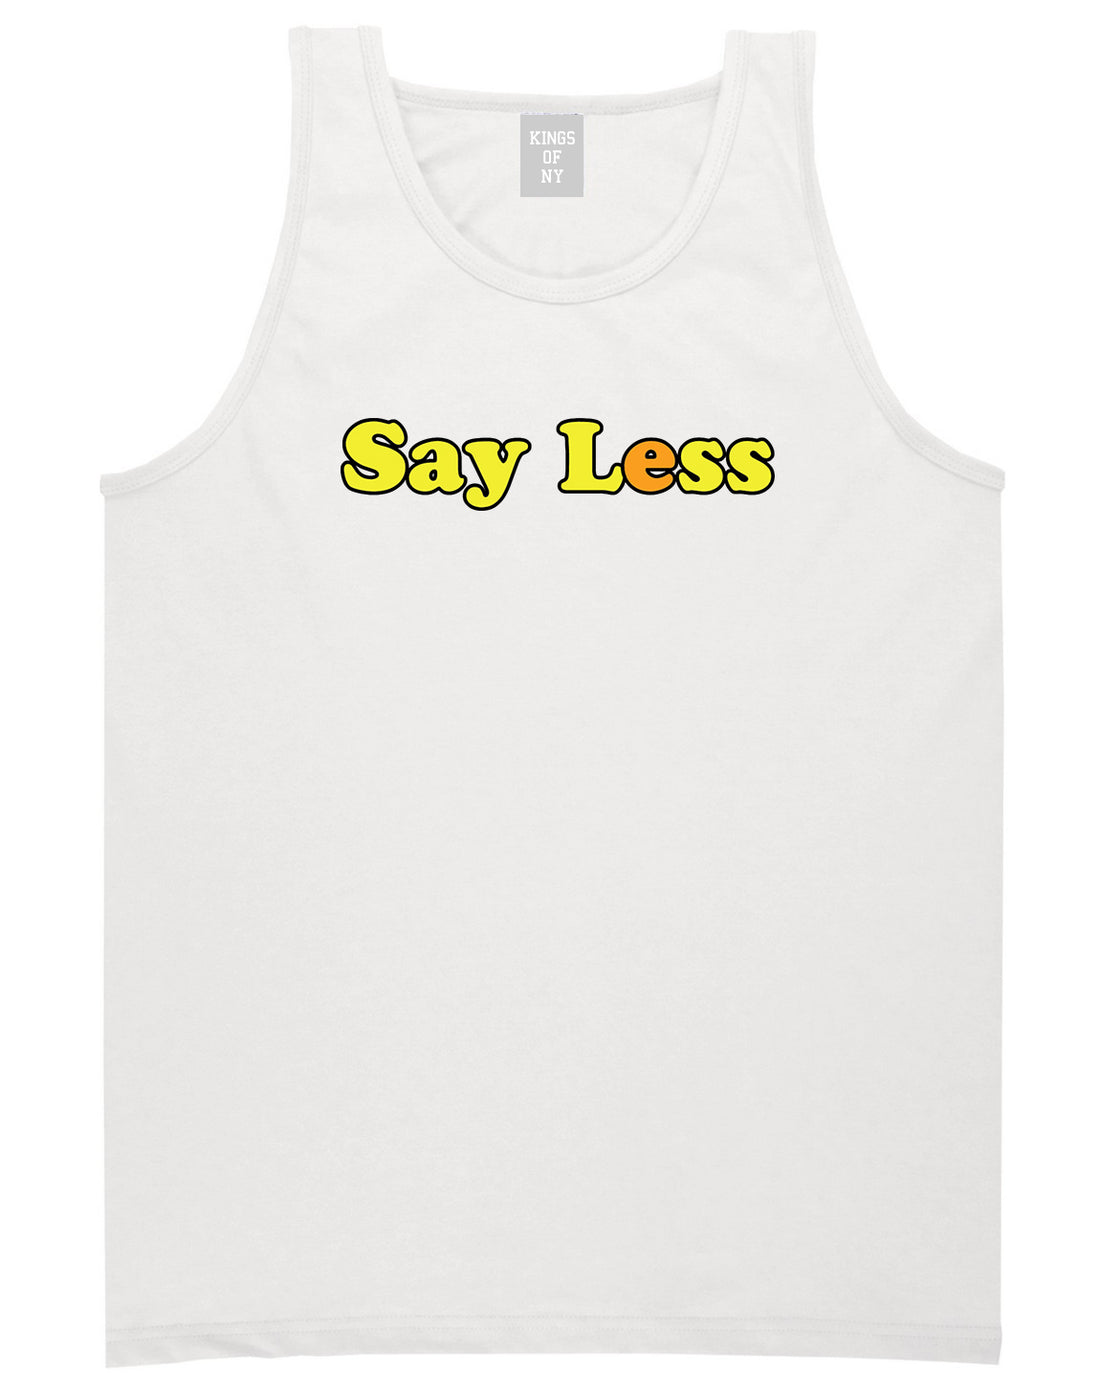 Say Less Mens Tank Top Shirt White